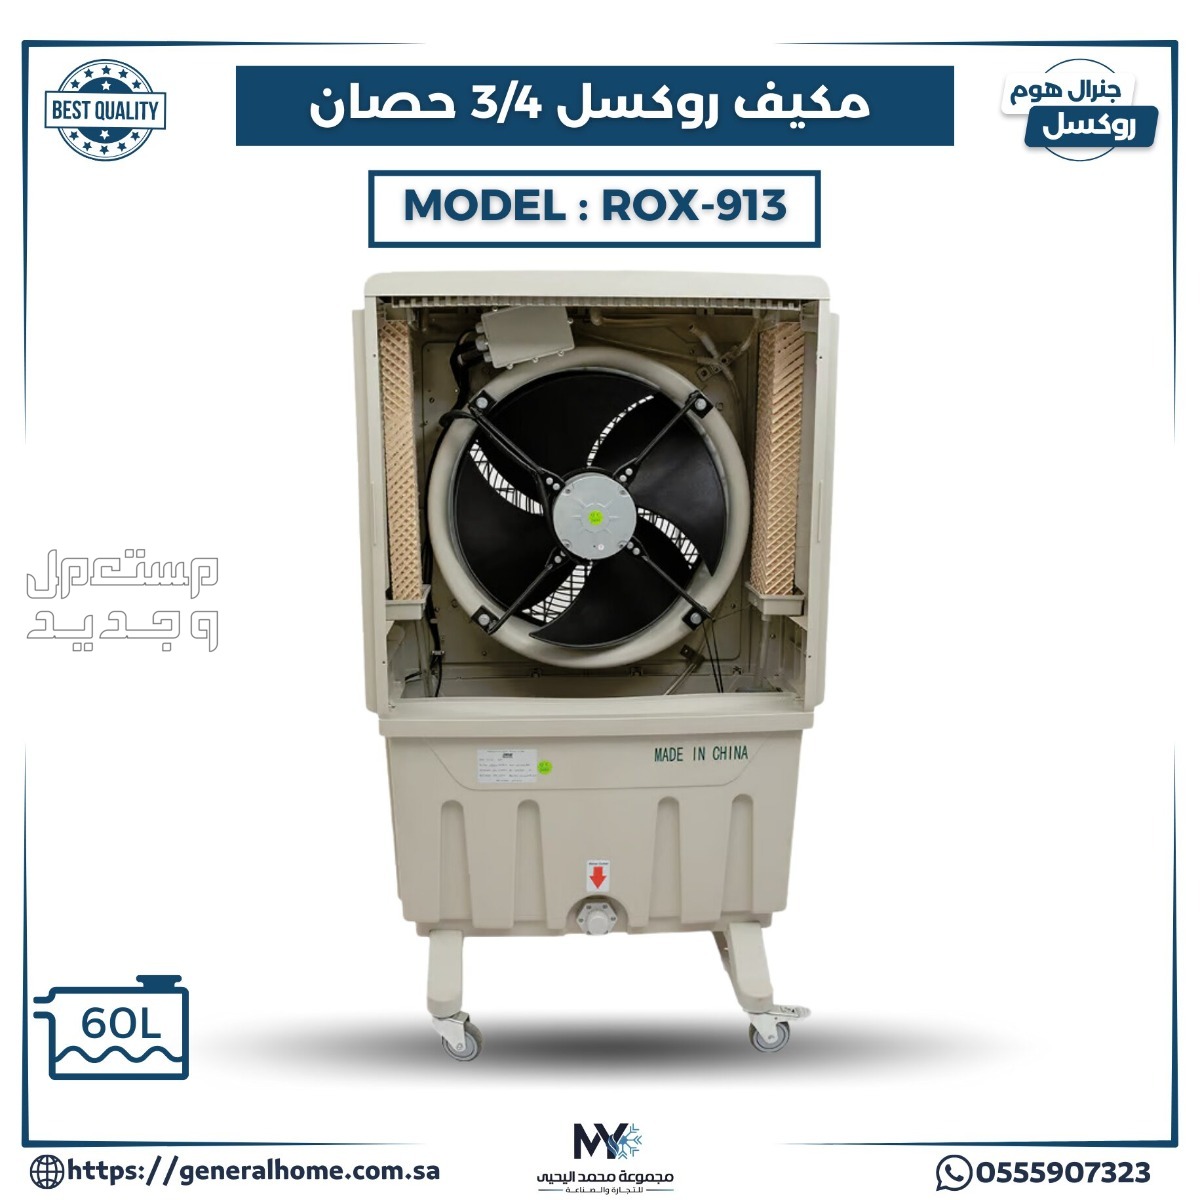 عروض اليحيى للمكيفات بالأنواع والمواصفات والصور والأسعار في فلسطين مكيف روكسل 3/4 حصان موديل ROX-913